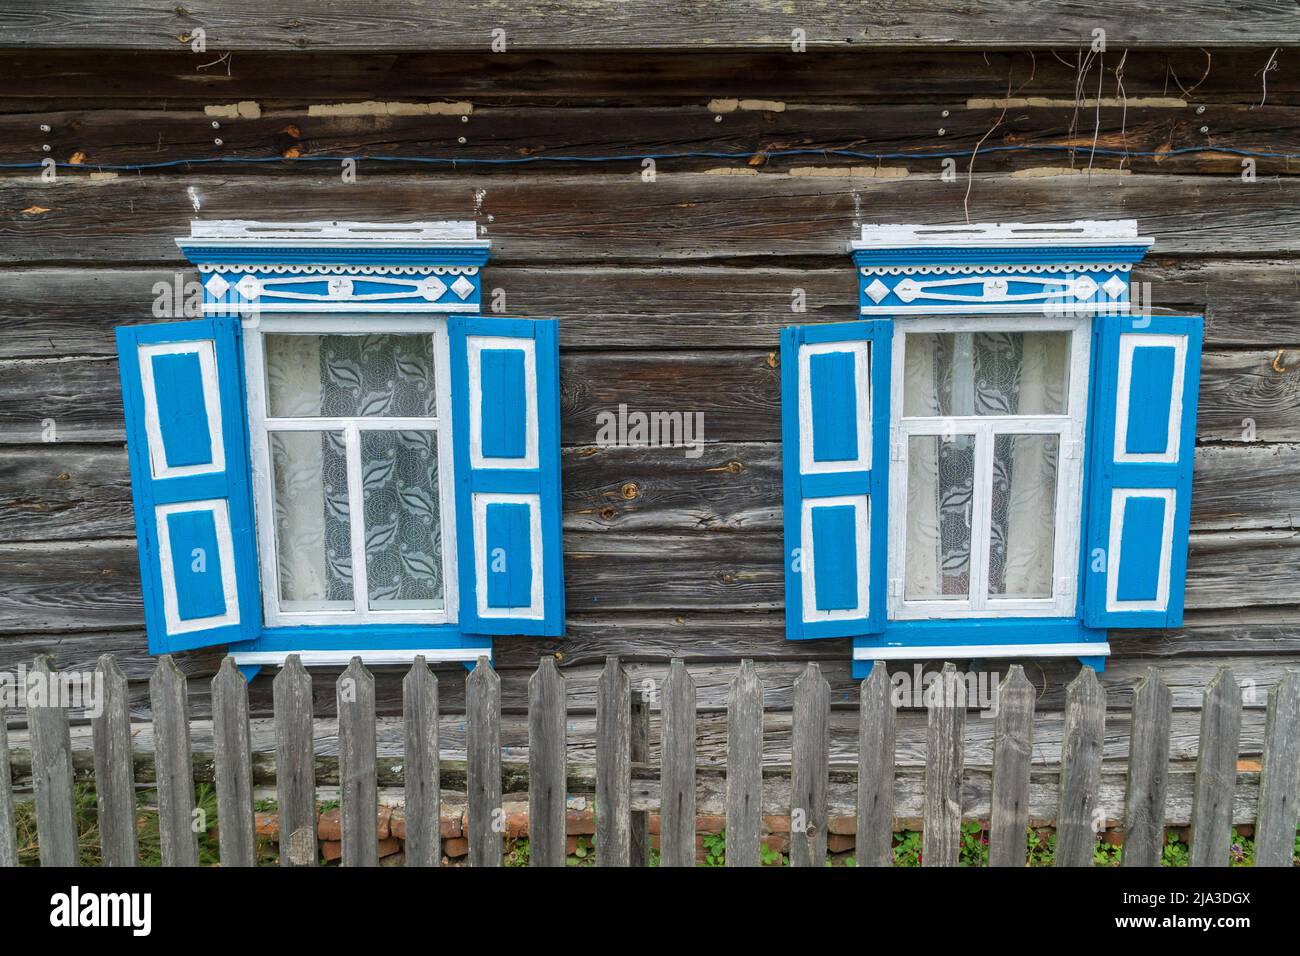 Fenêtres en bois sculptées dans d'anciennes maisons en bois dans le village d'Oleshnia, région de Chernihiv, Ukraine. Patrimoine culturel ukrainien Banque D'Images